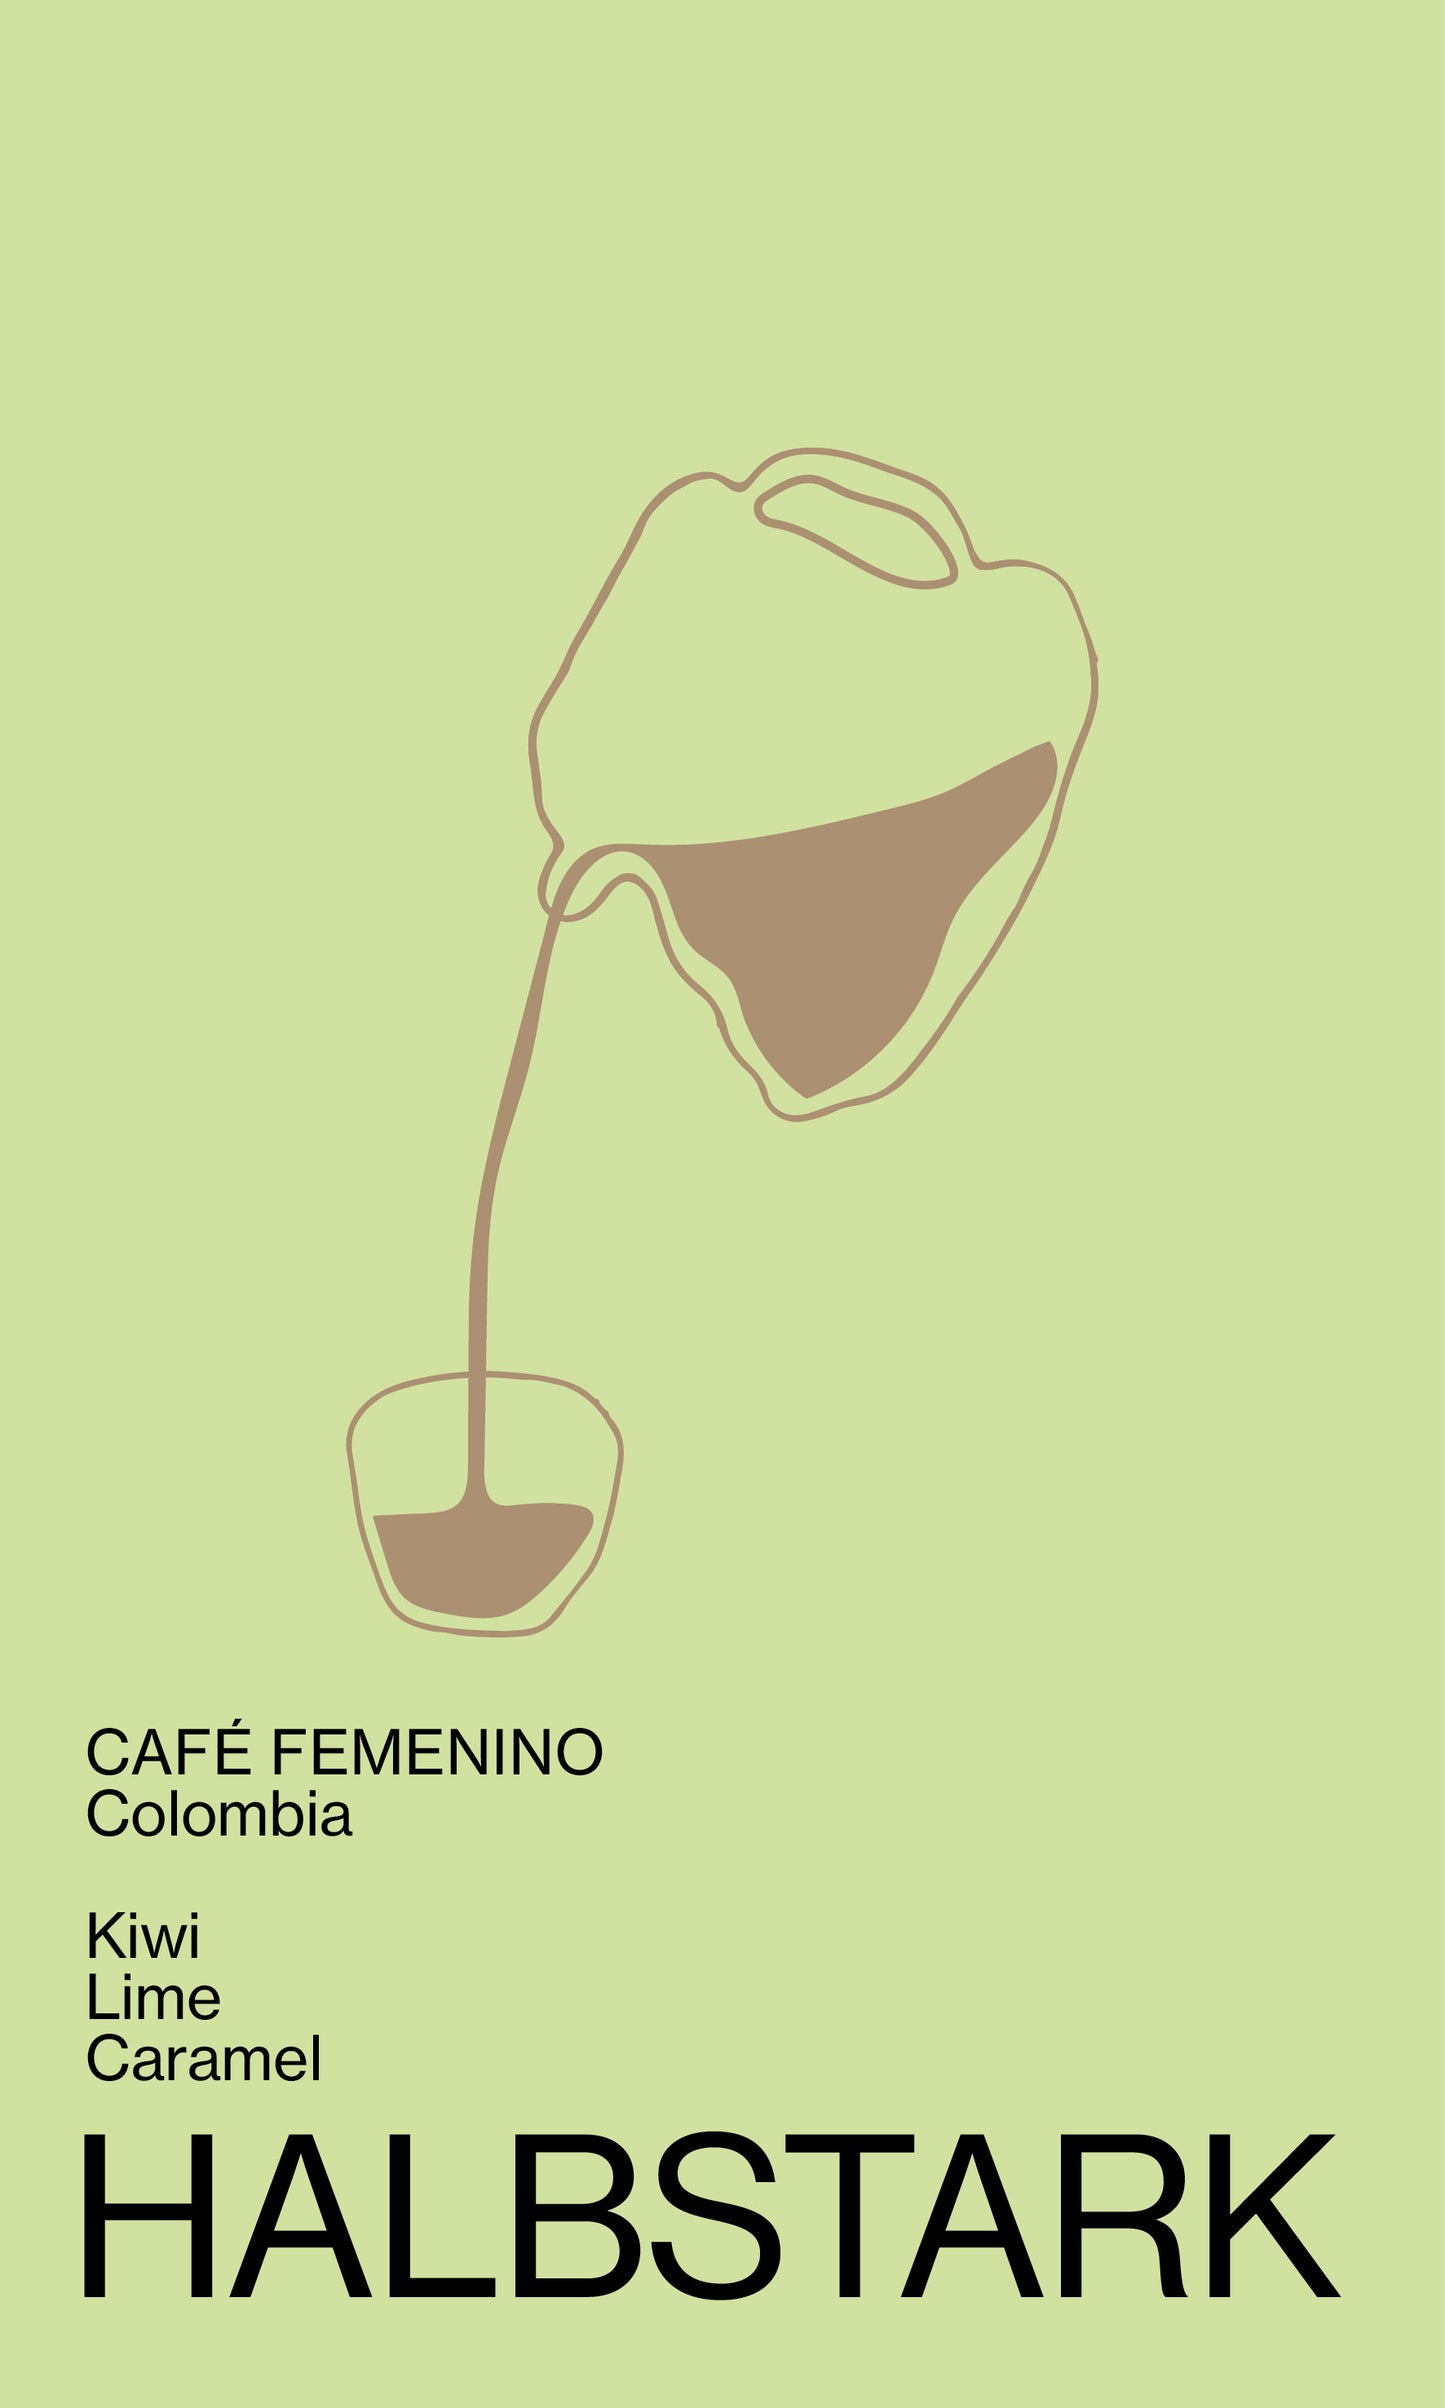 Colombia, CAFE FEMININO